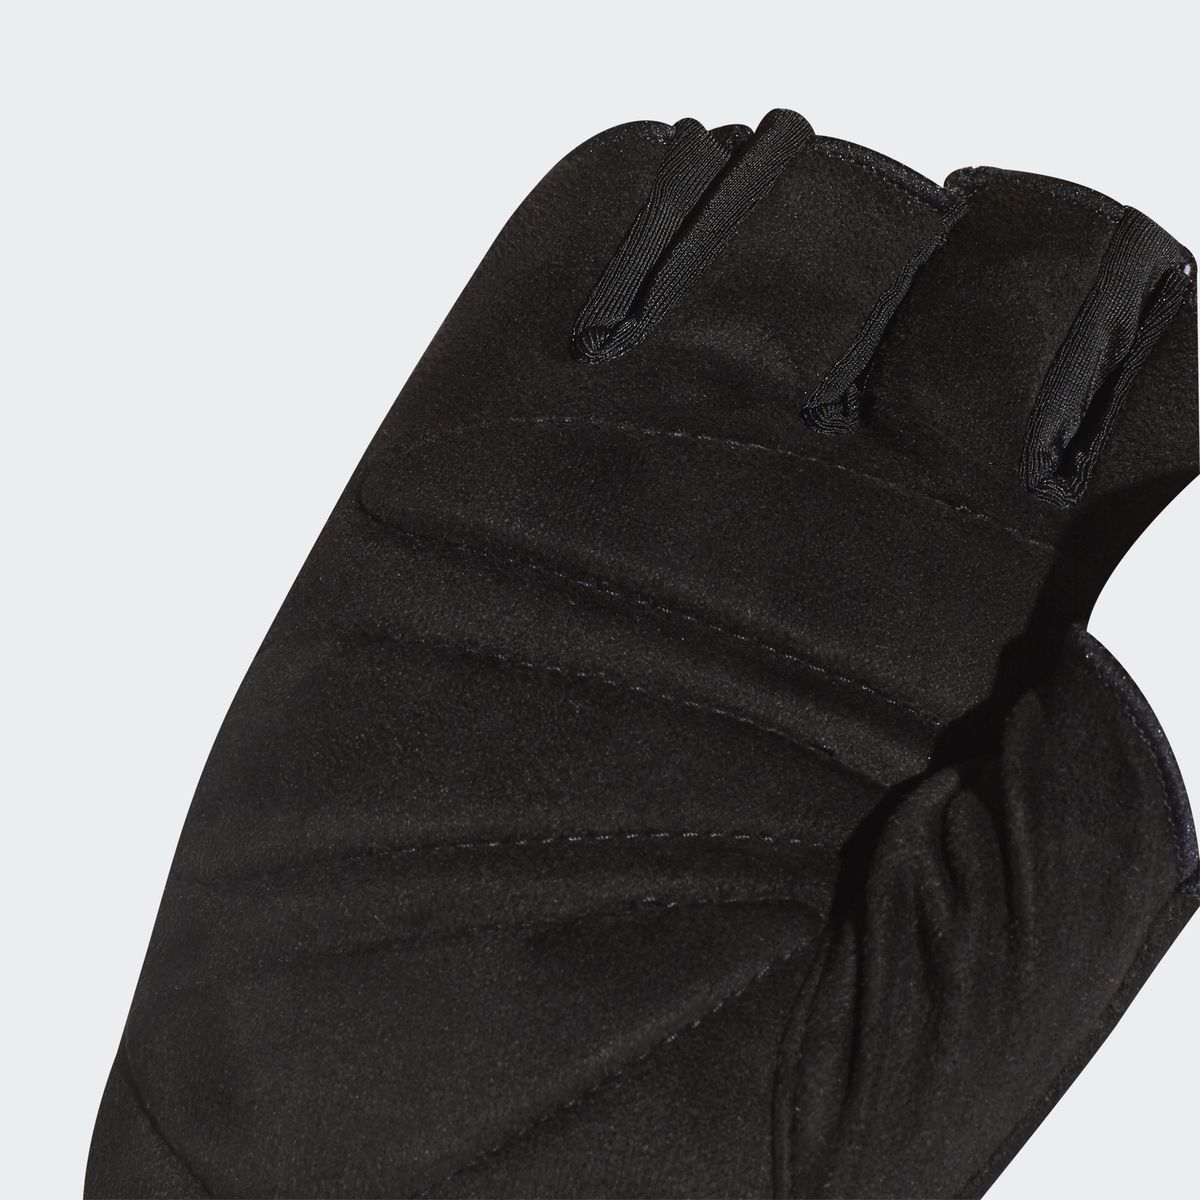   Adidas Clite Glove W G, : . CY6247.  XL (24)